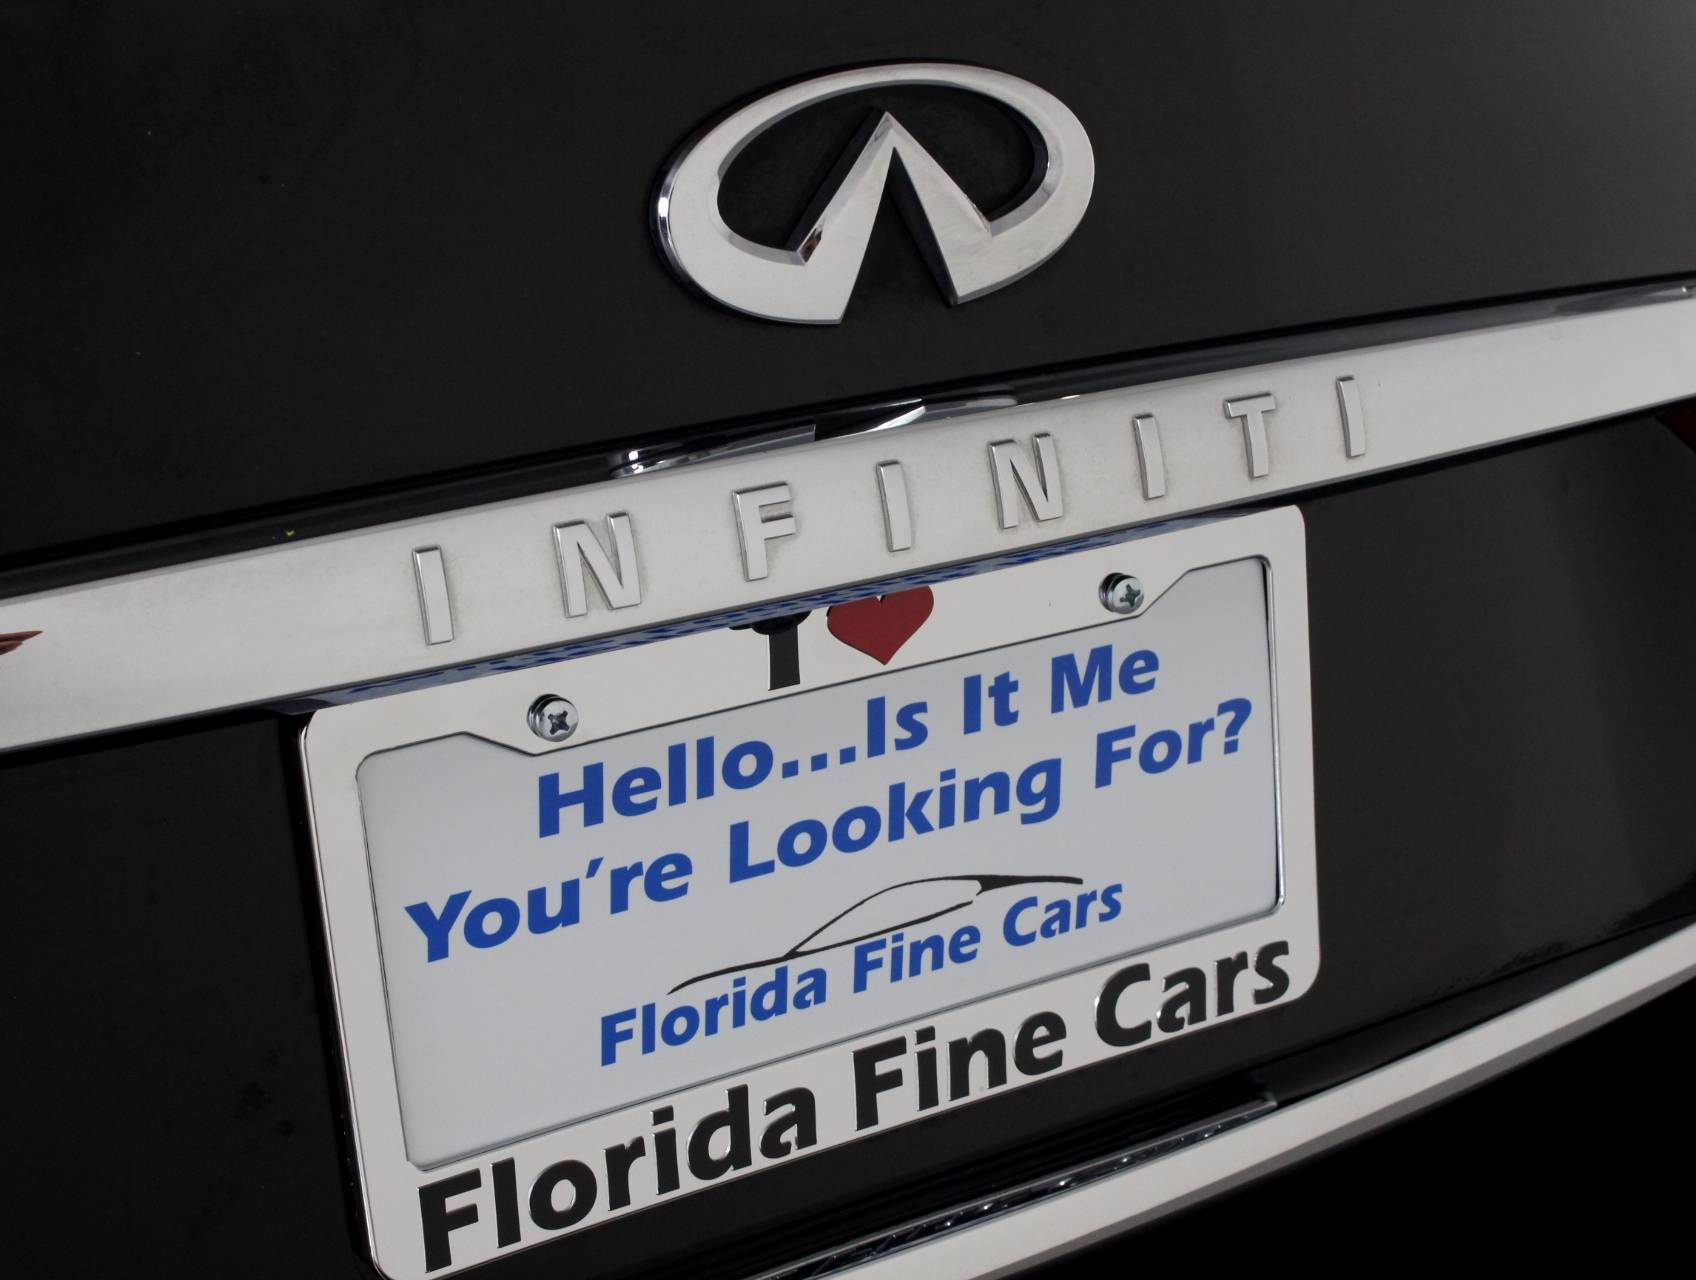 Florida Fine Cars - Used INFINITI Q50 2014 WEST PALM Premium